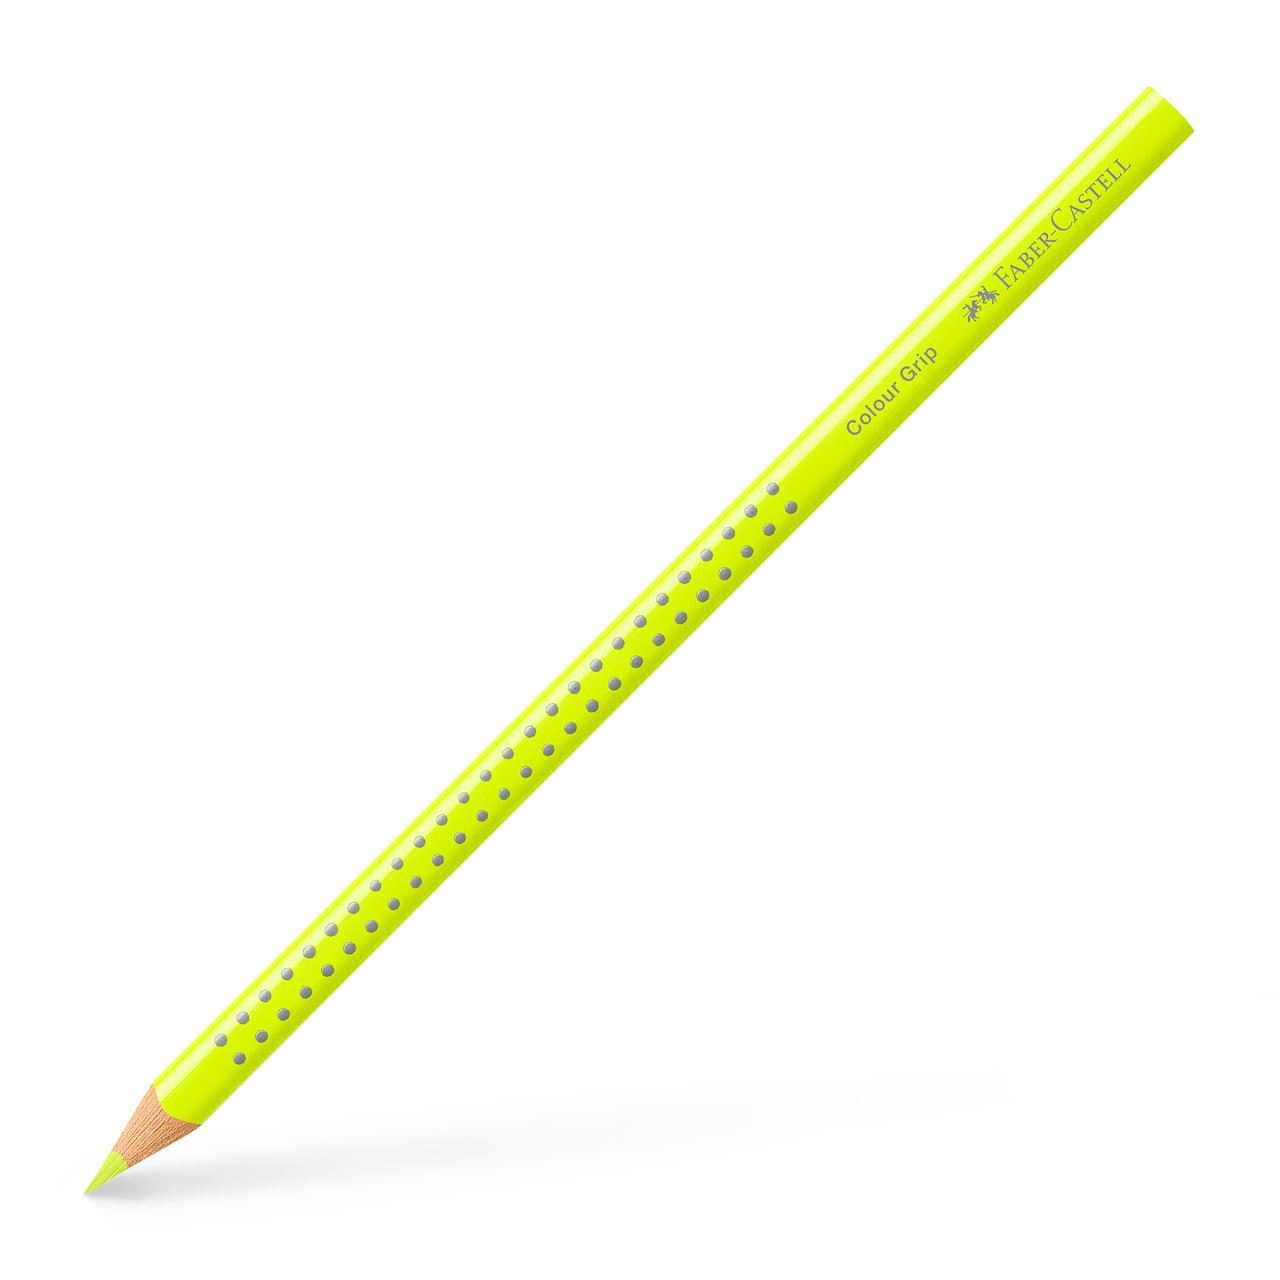 Crayon de couleur Colour Grip jaune fluo